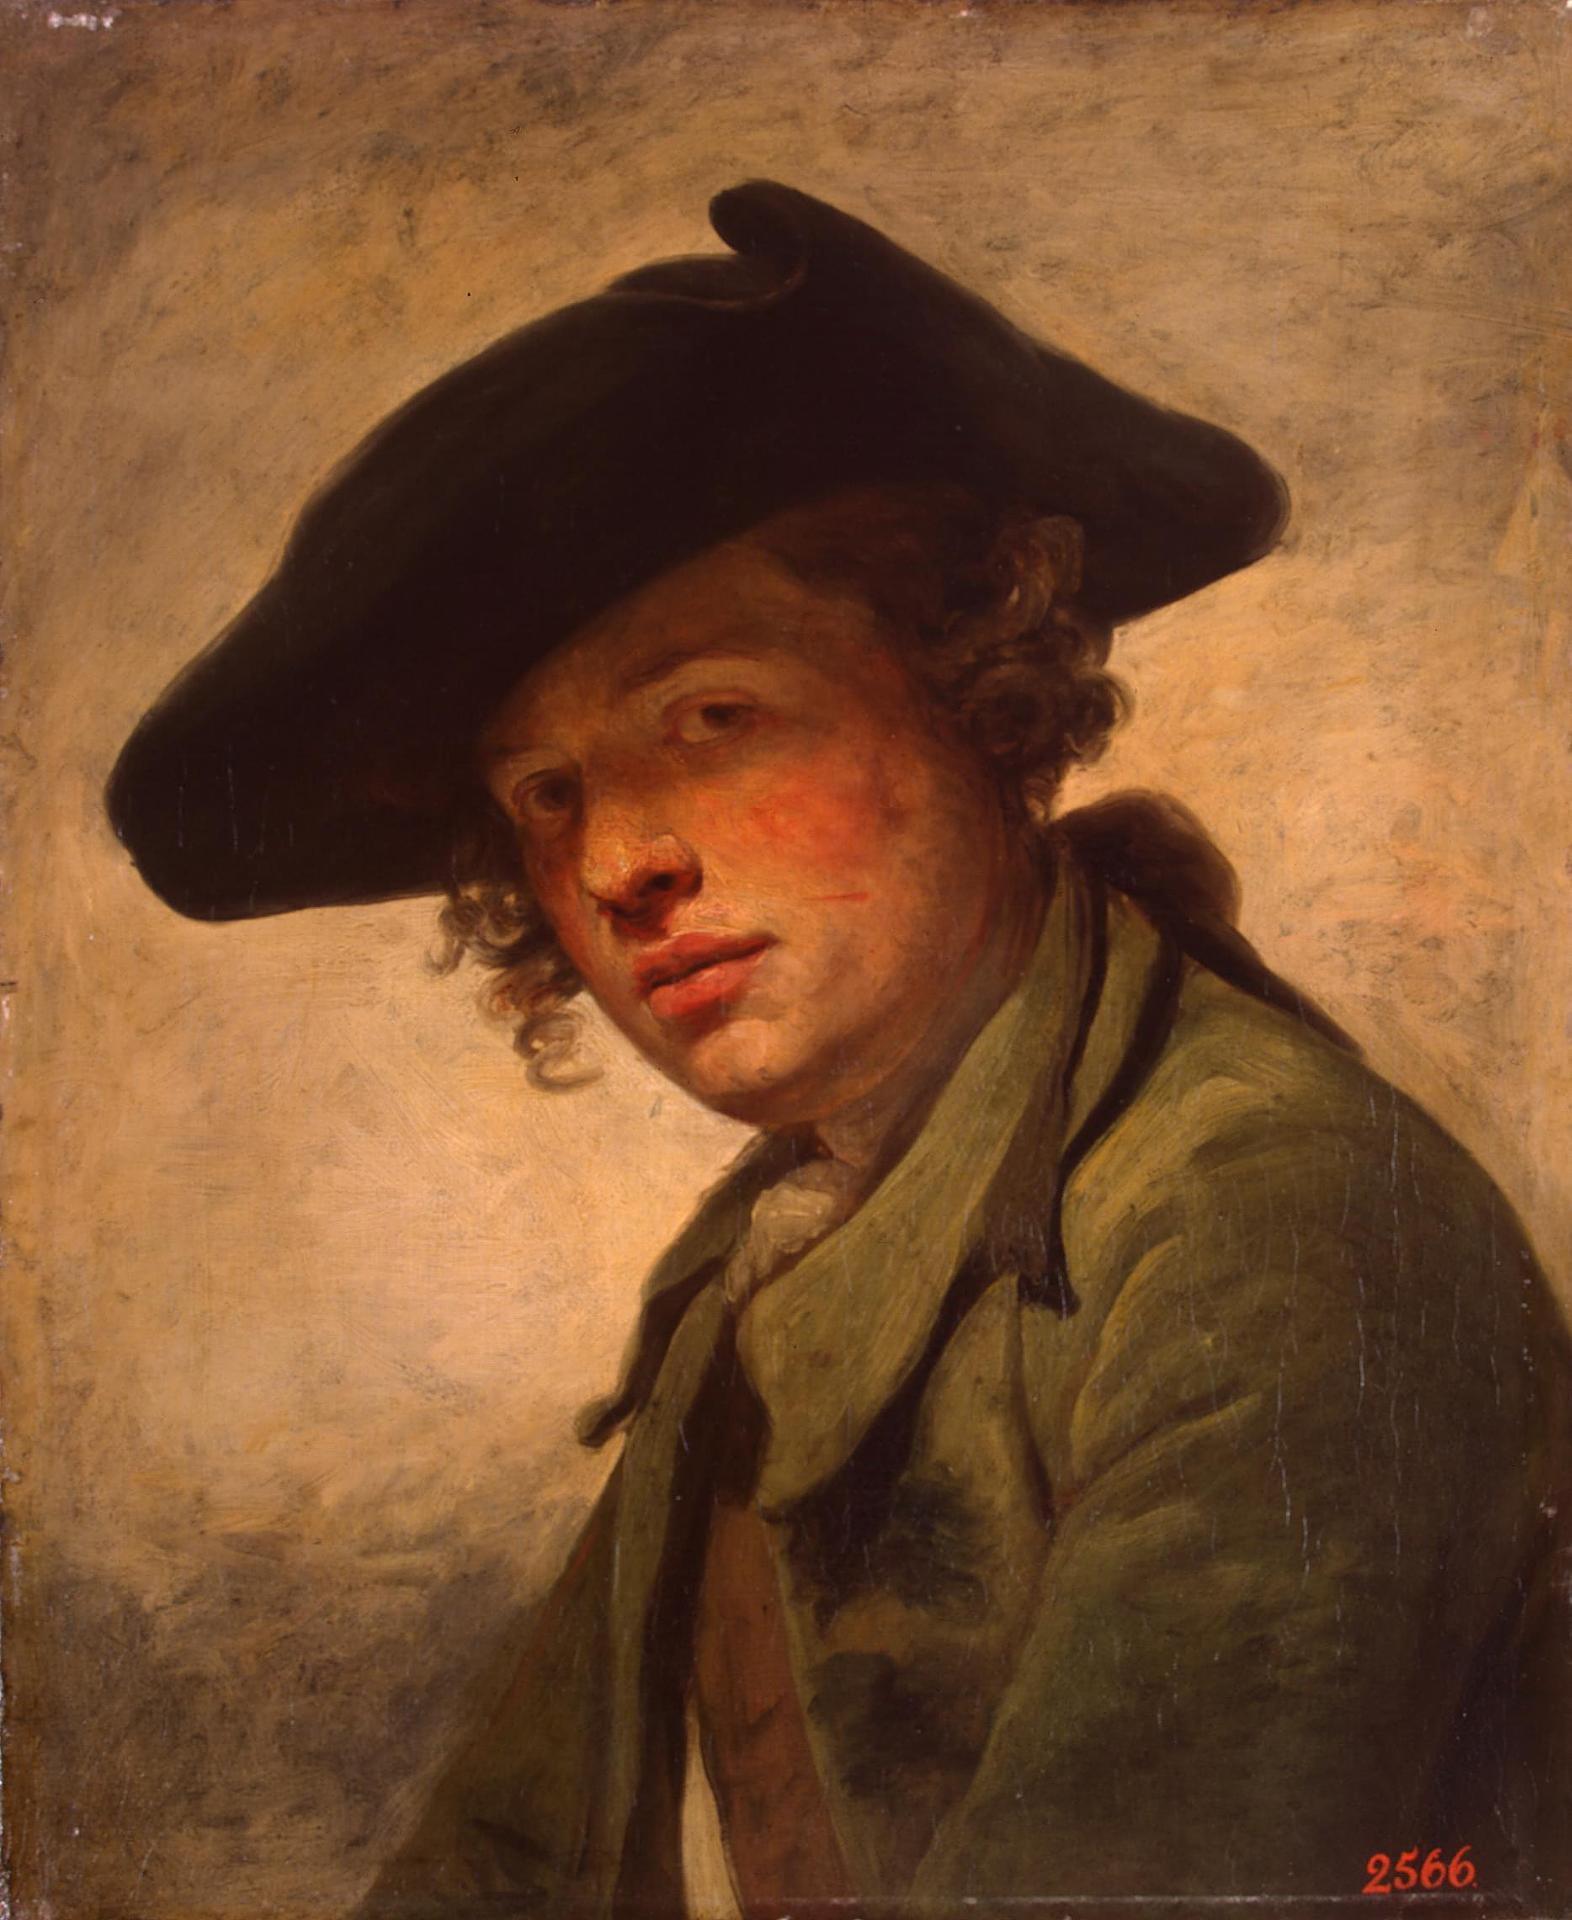 Жан-Батист Грёз. "Портрет молодого человека в шляпе". 1750-е. Эрмитаж, Санкт-Петербург.